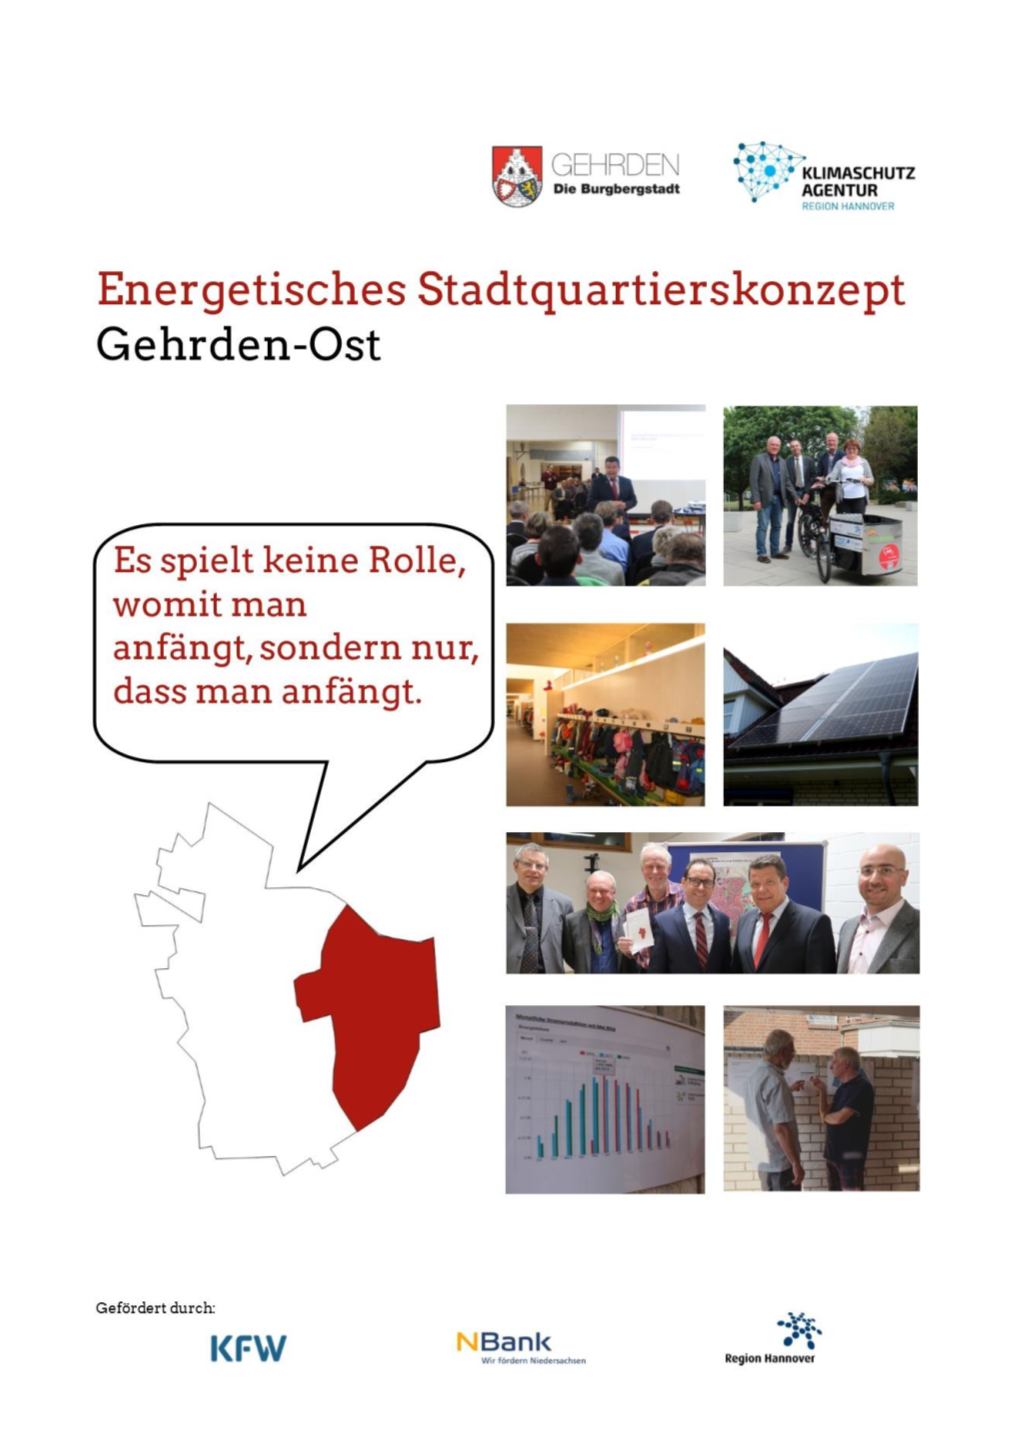 Endbericht Energetisches Stadtquartierskonzept Gehrden